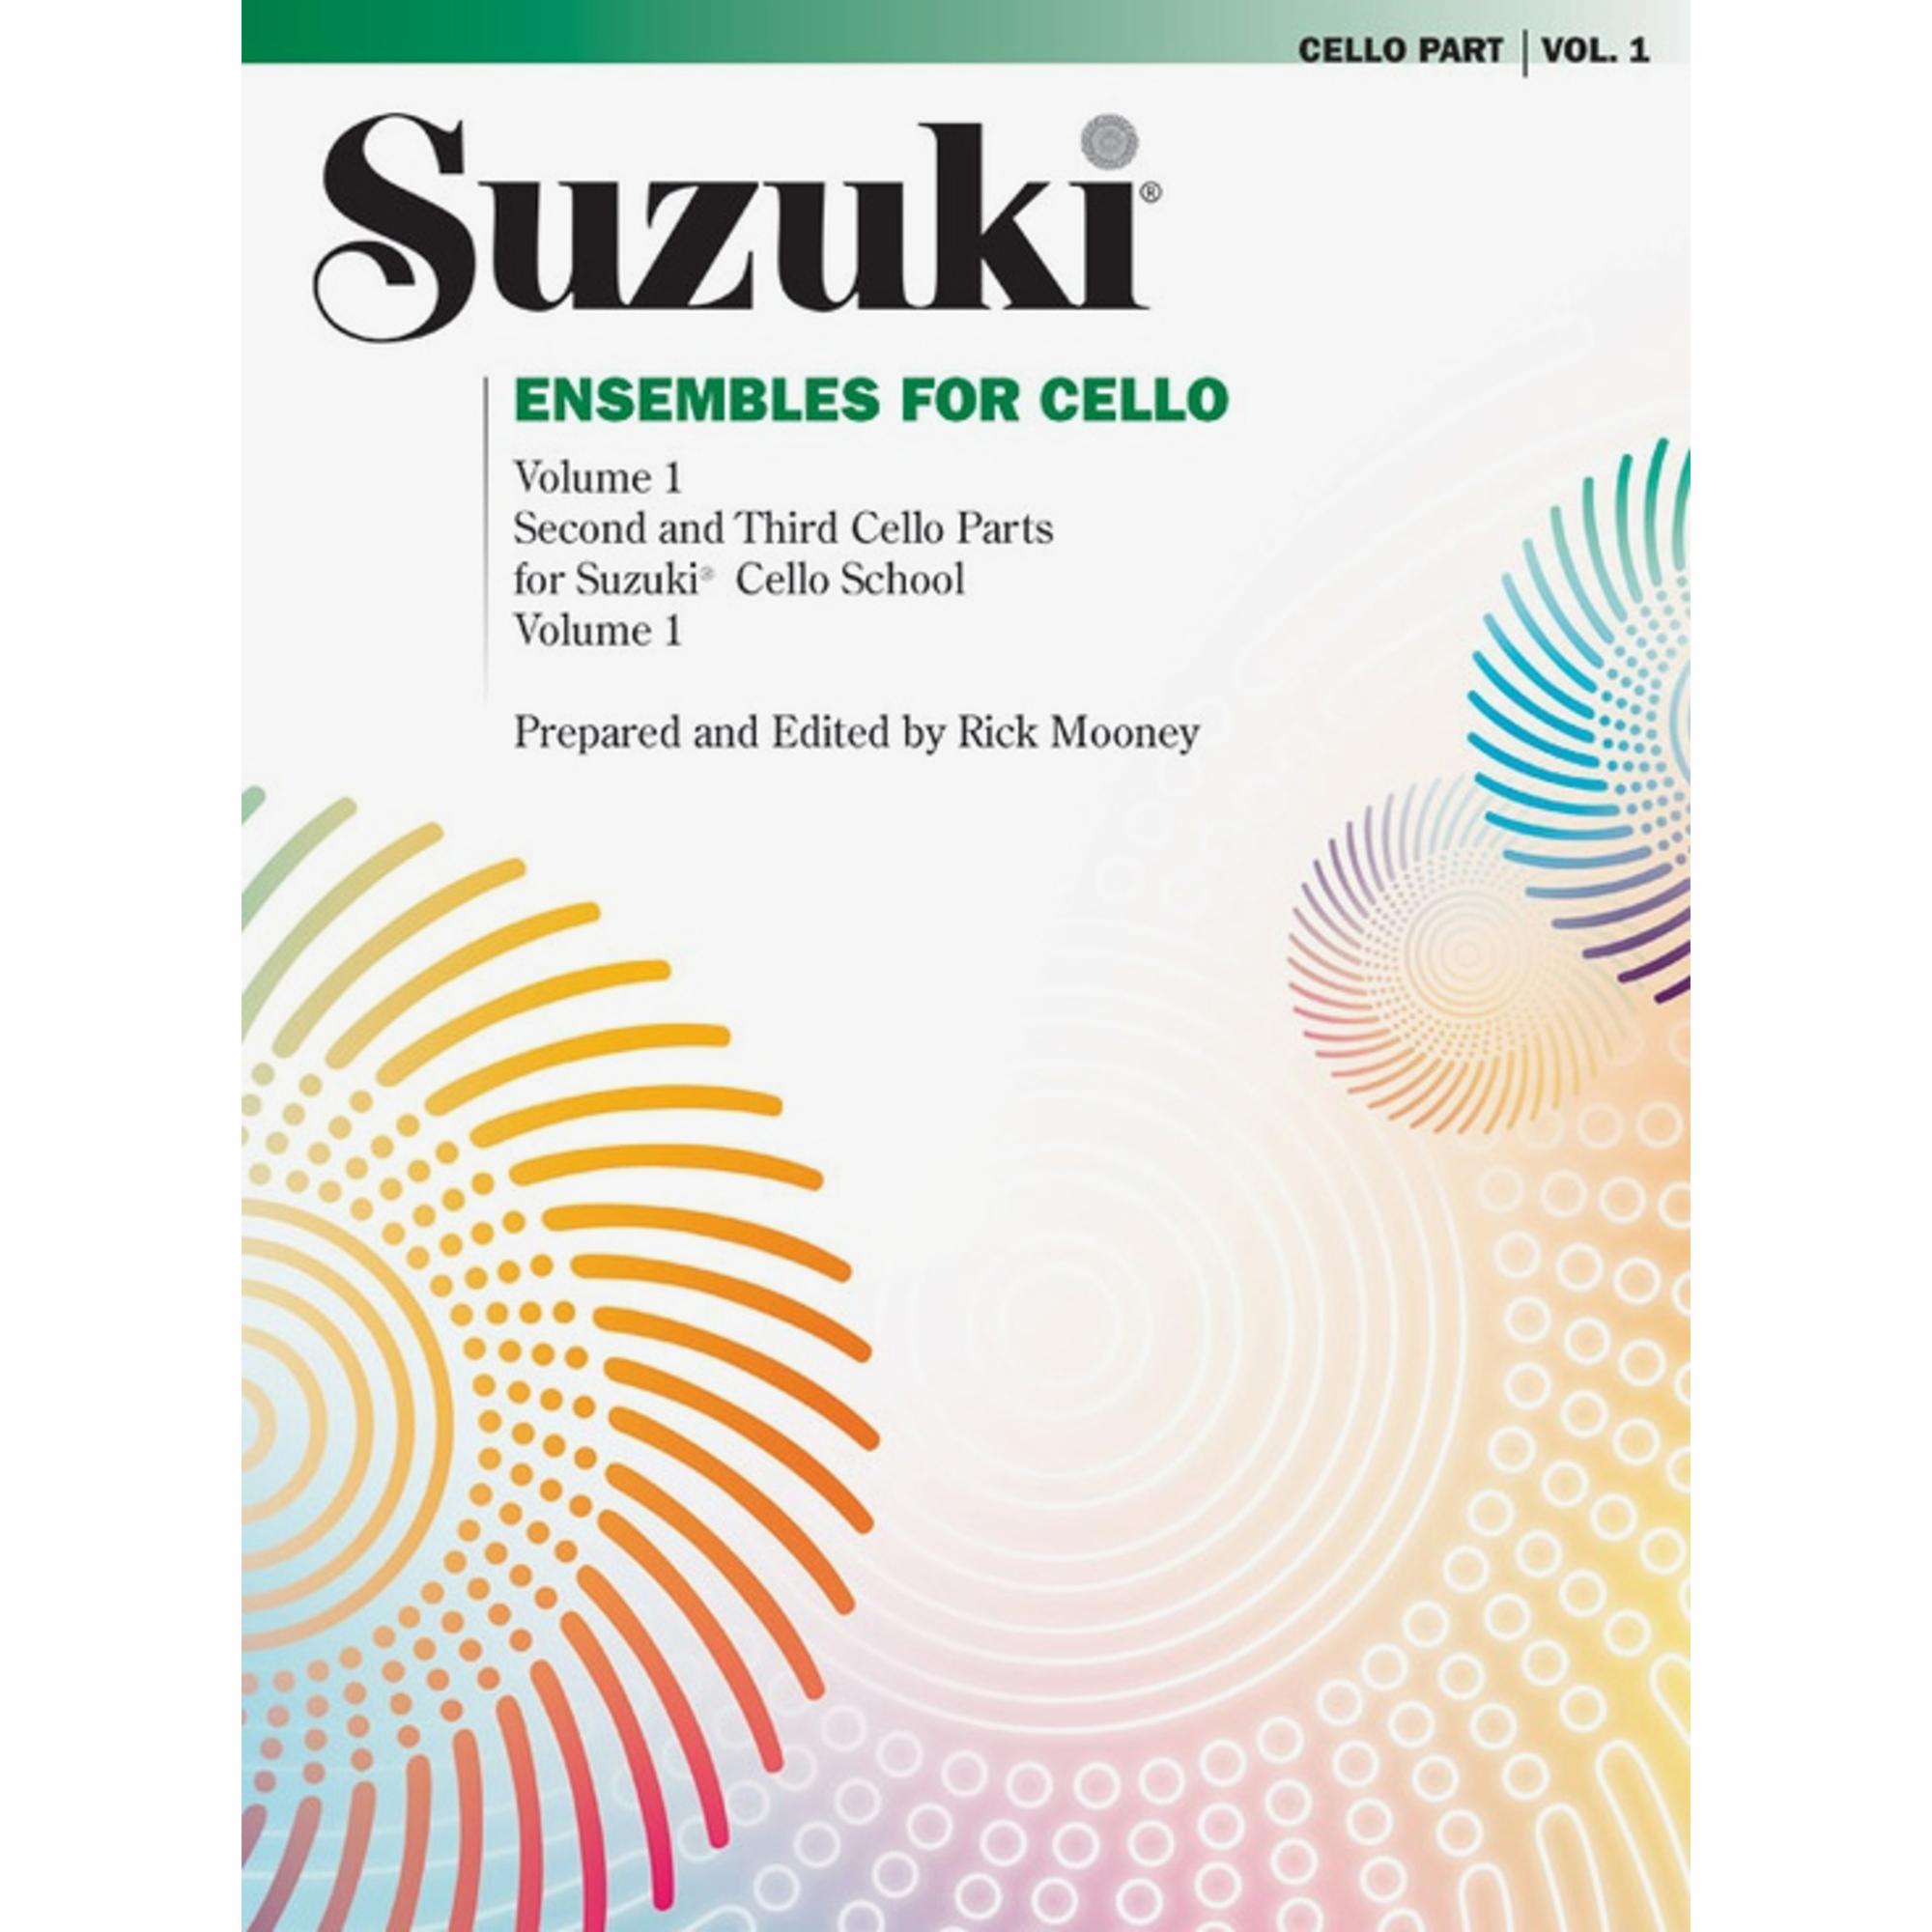 Suzuki: Ensembles for Cello